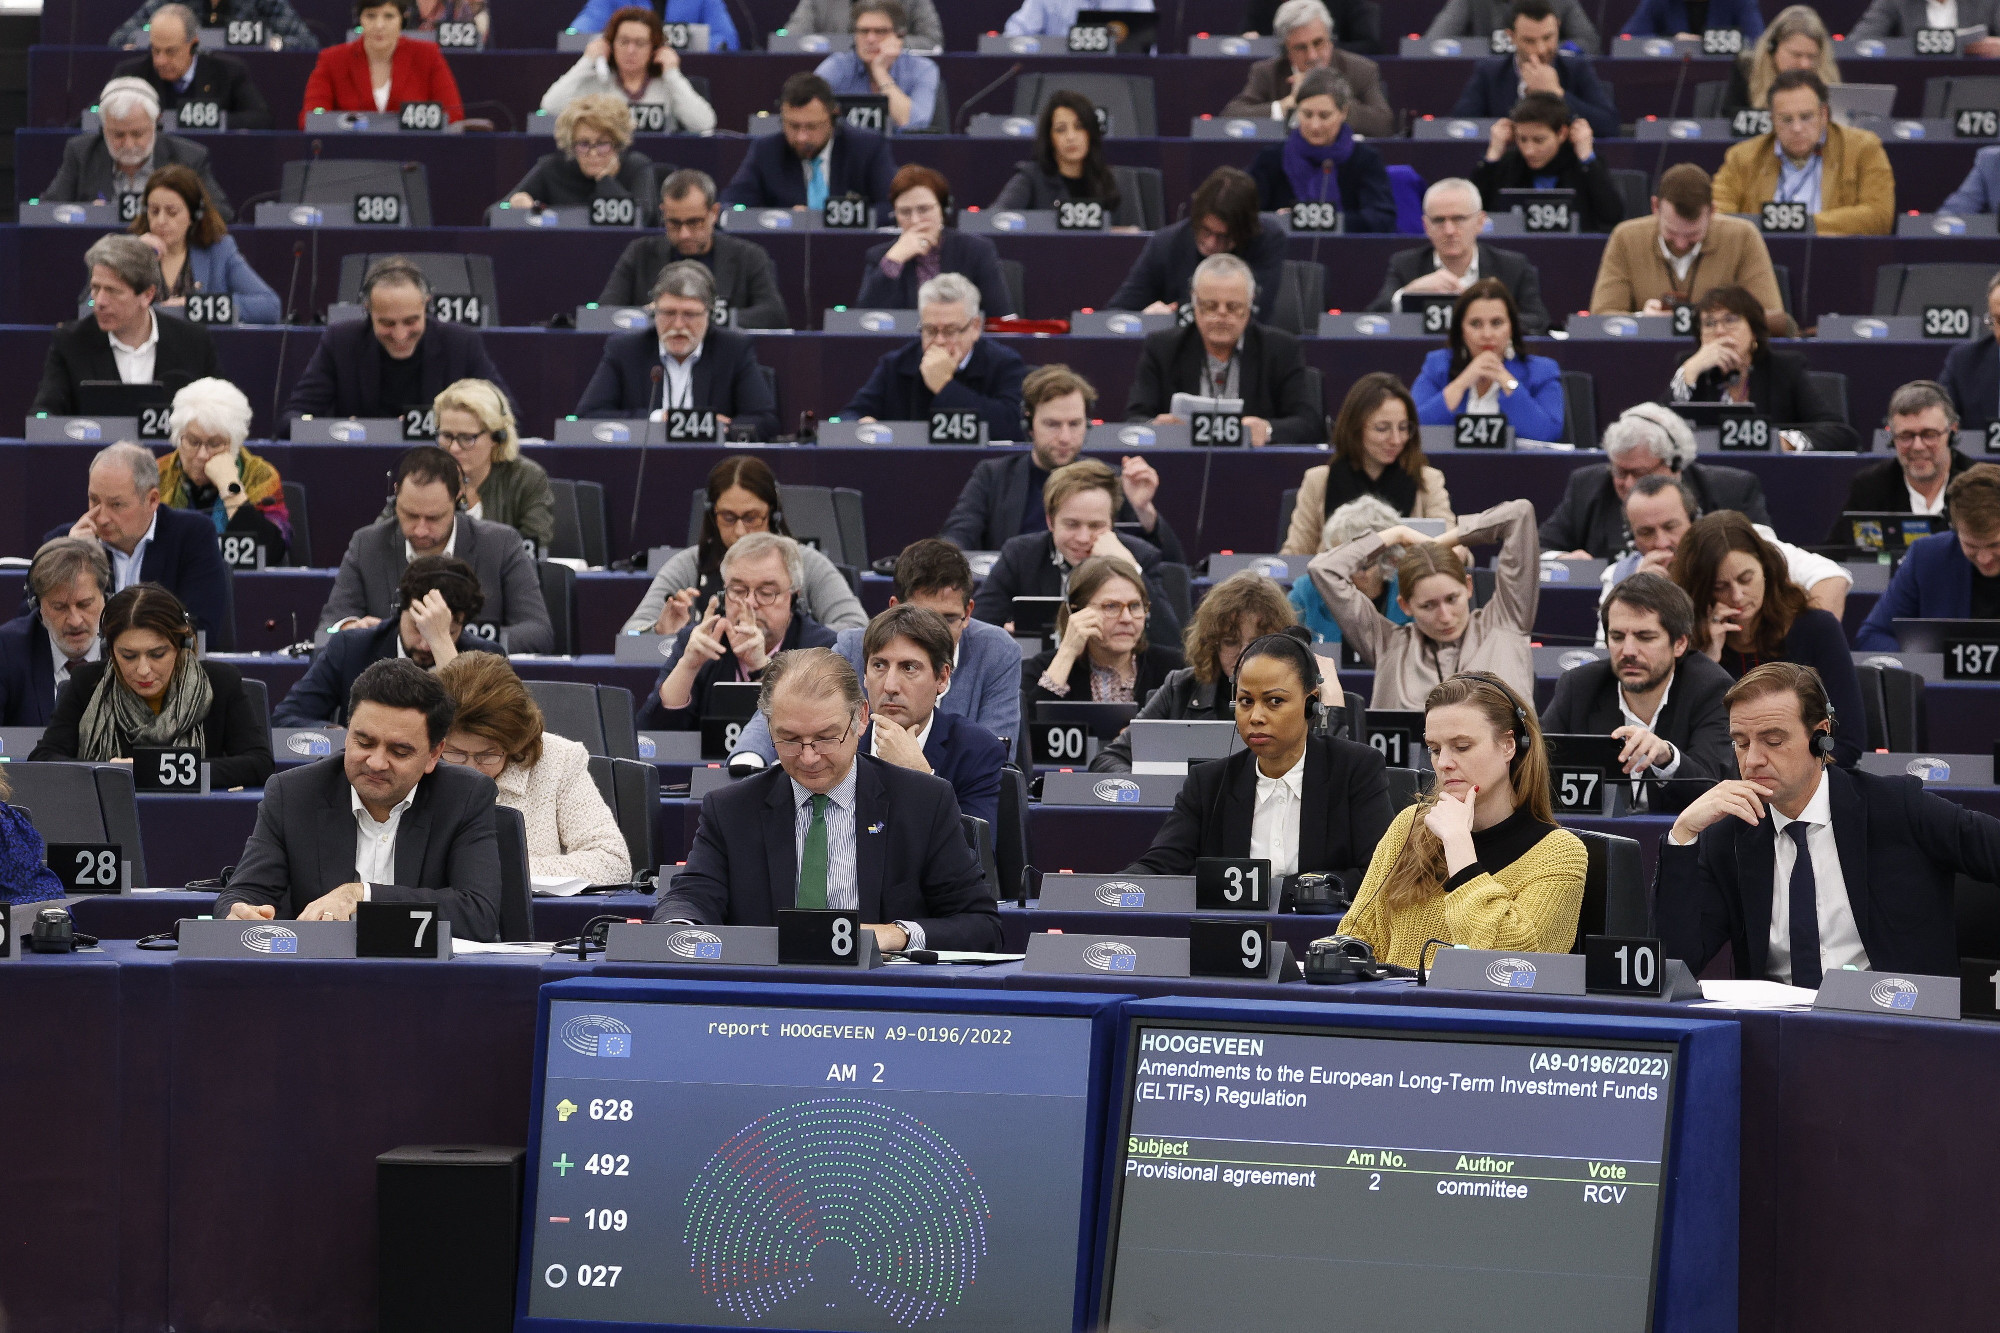 A Fidesz megint nem szavaz az EP-ben, ha az oroszokat kell bírálni